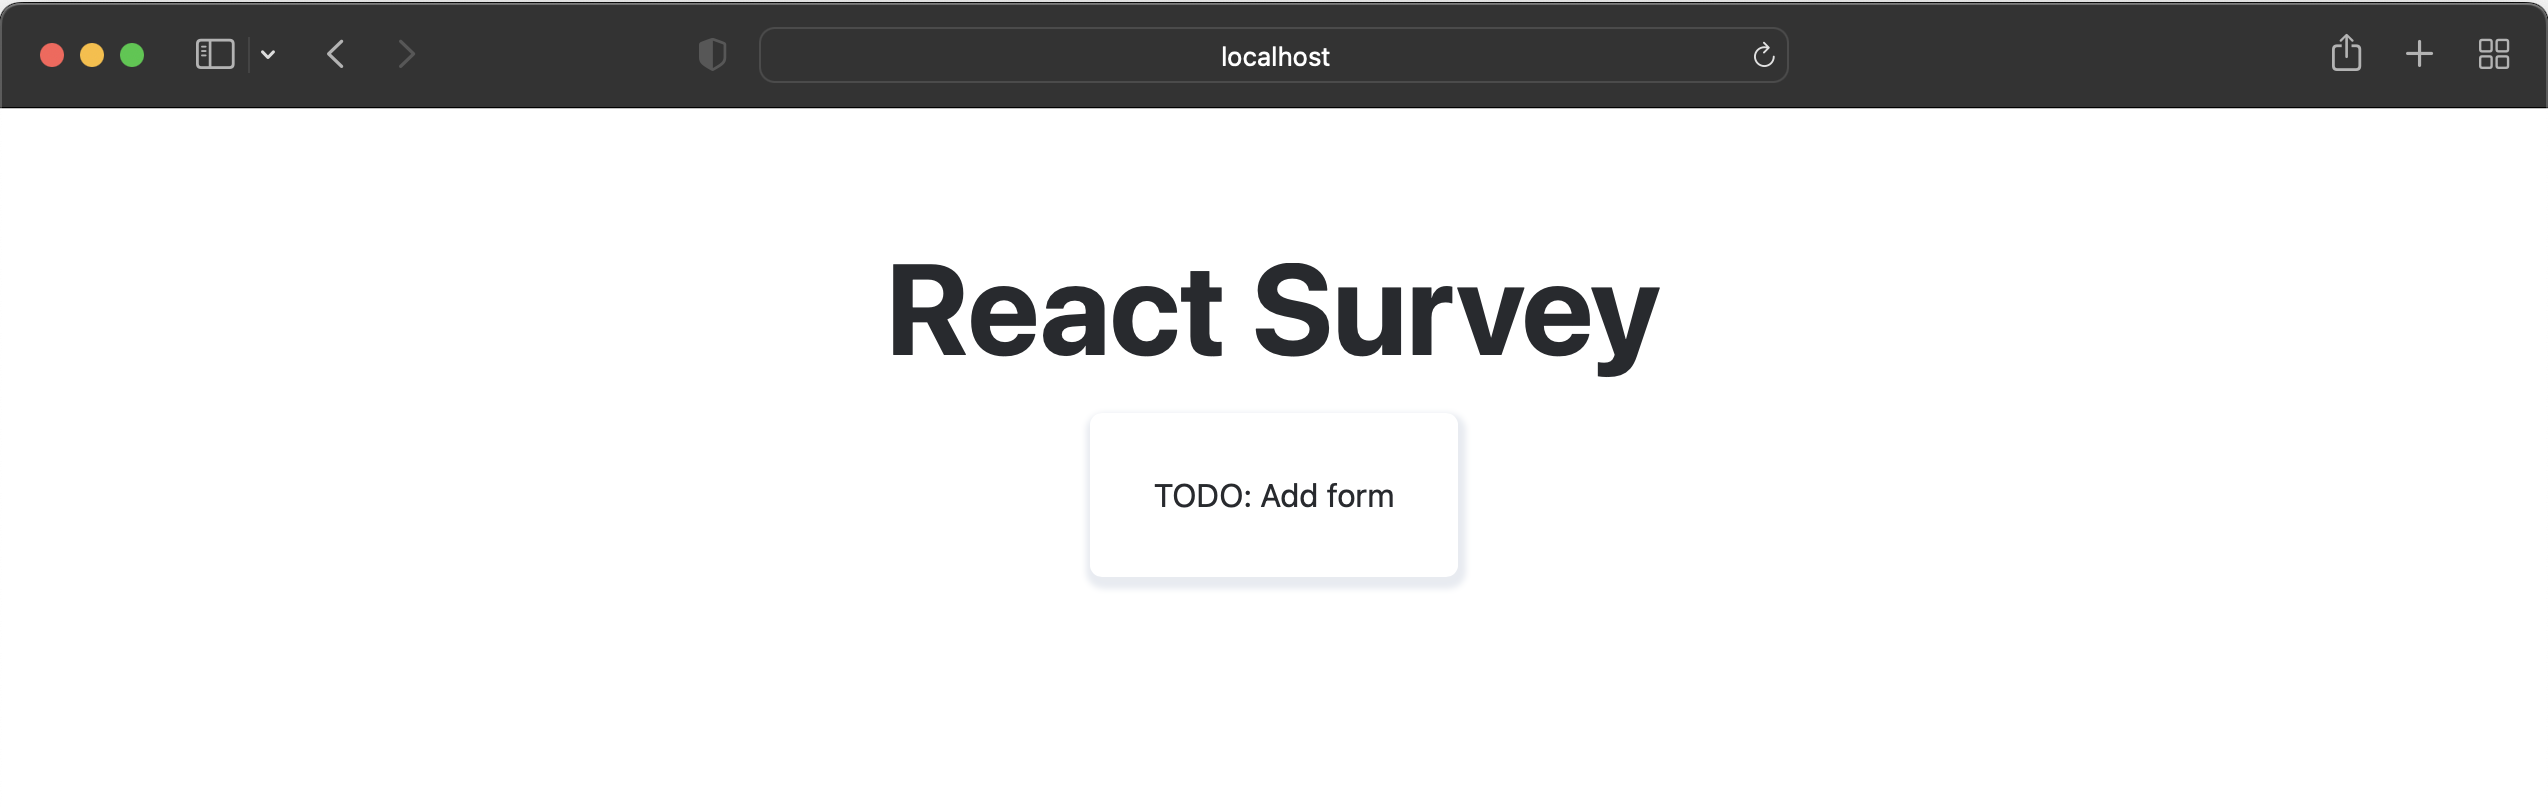 Survey app starting code in development server